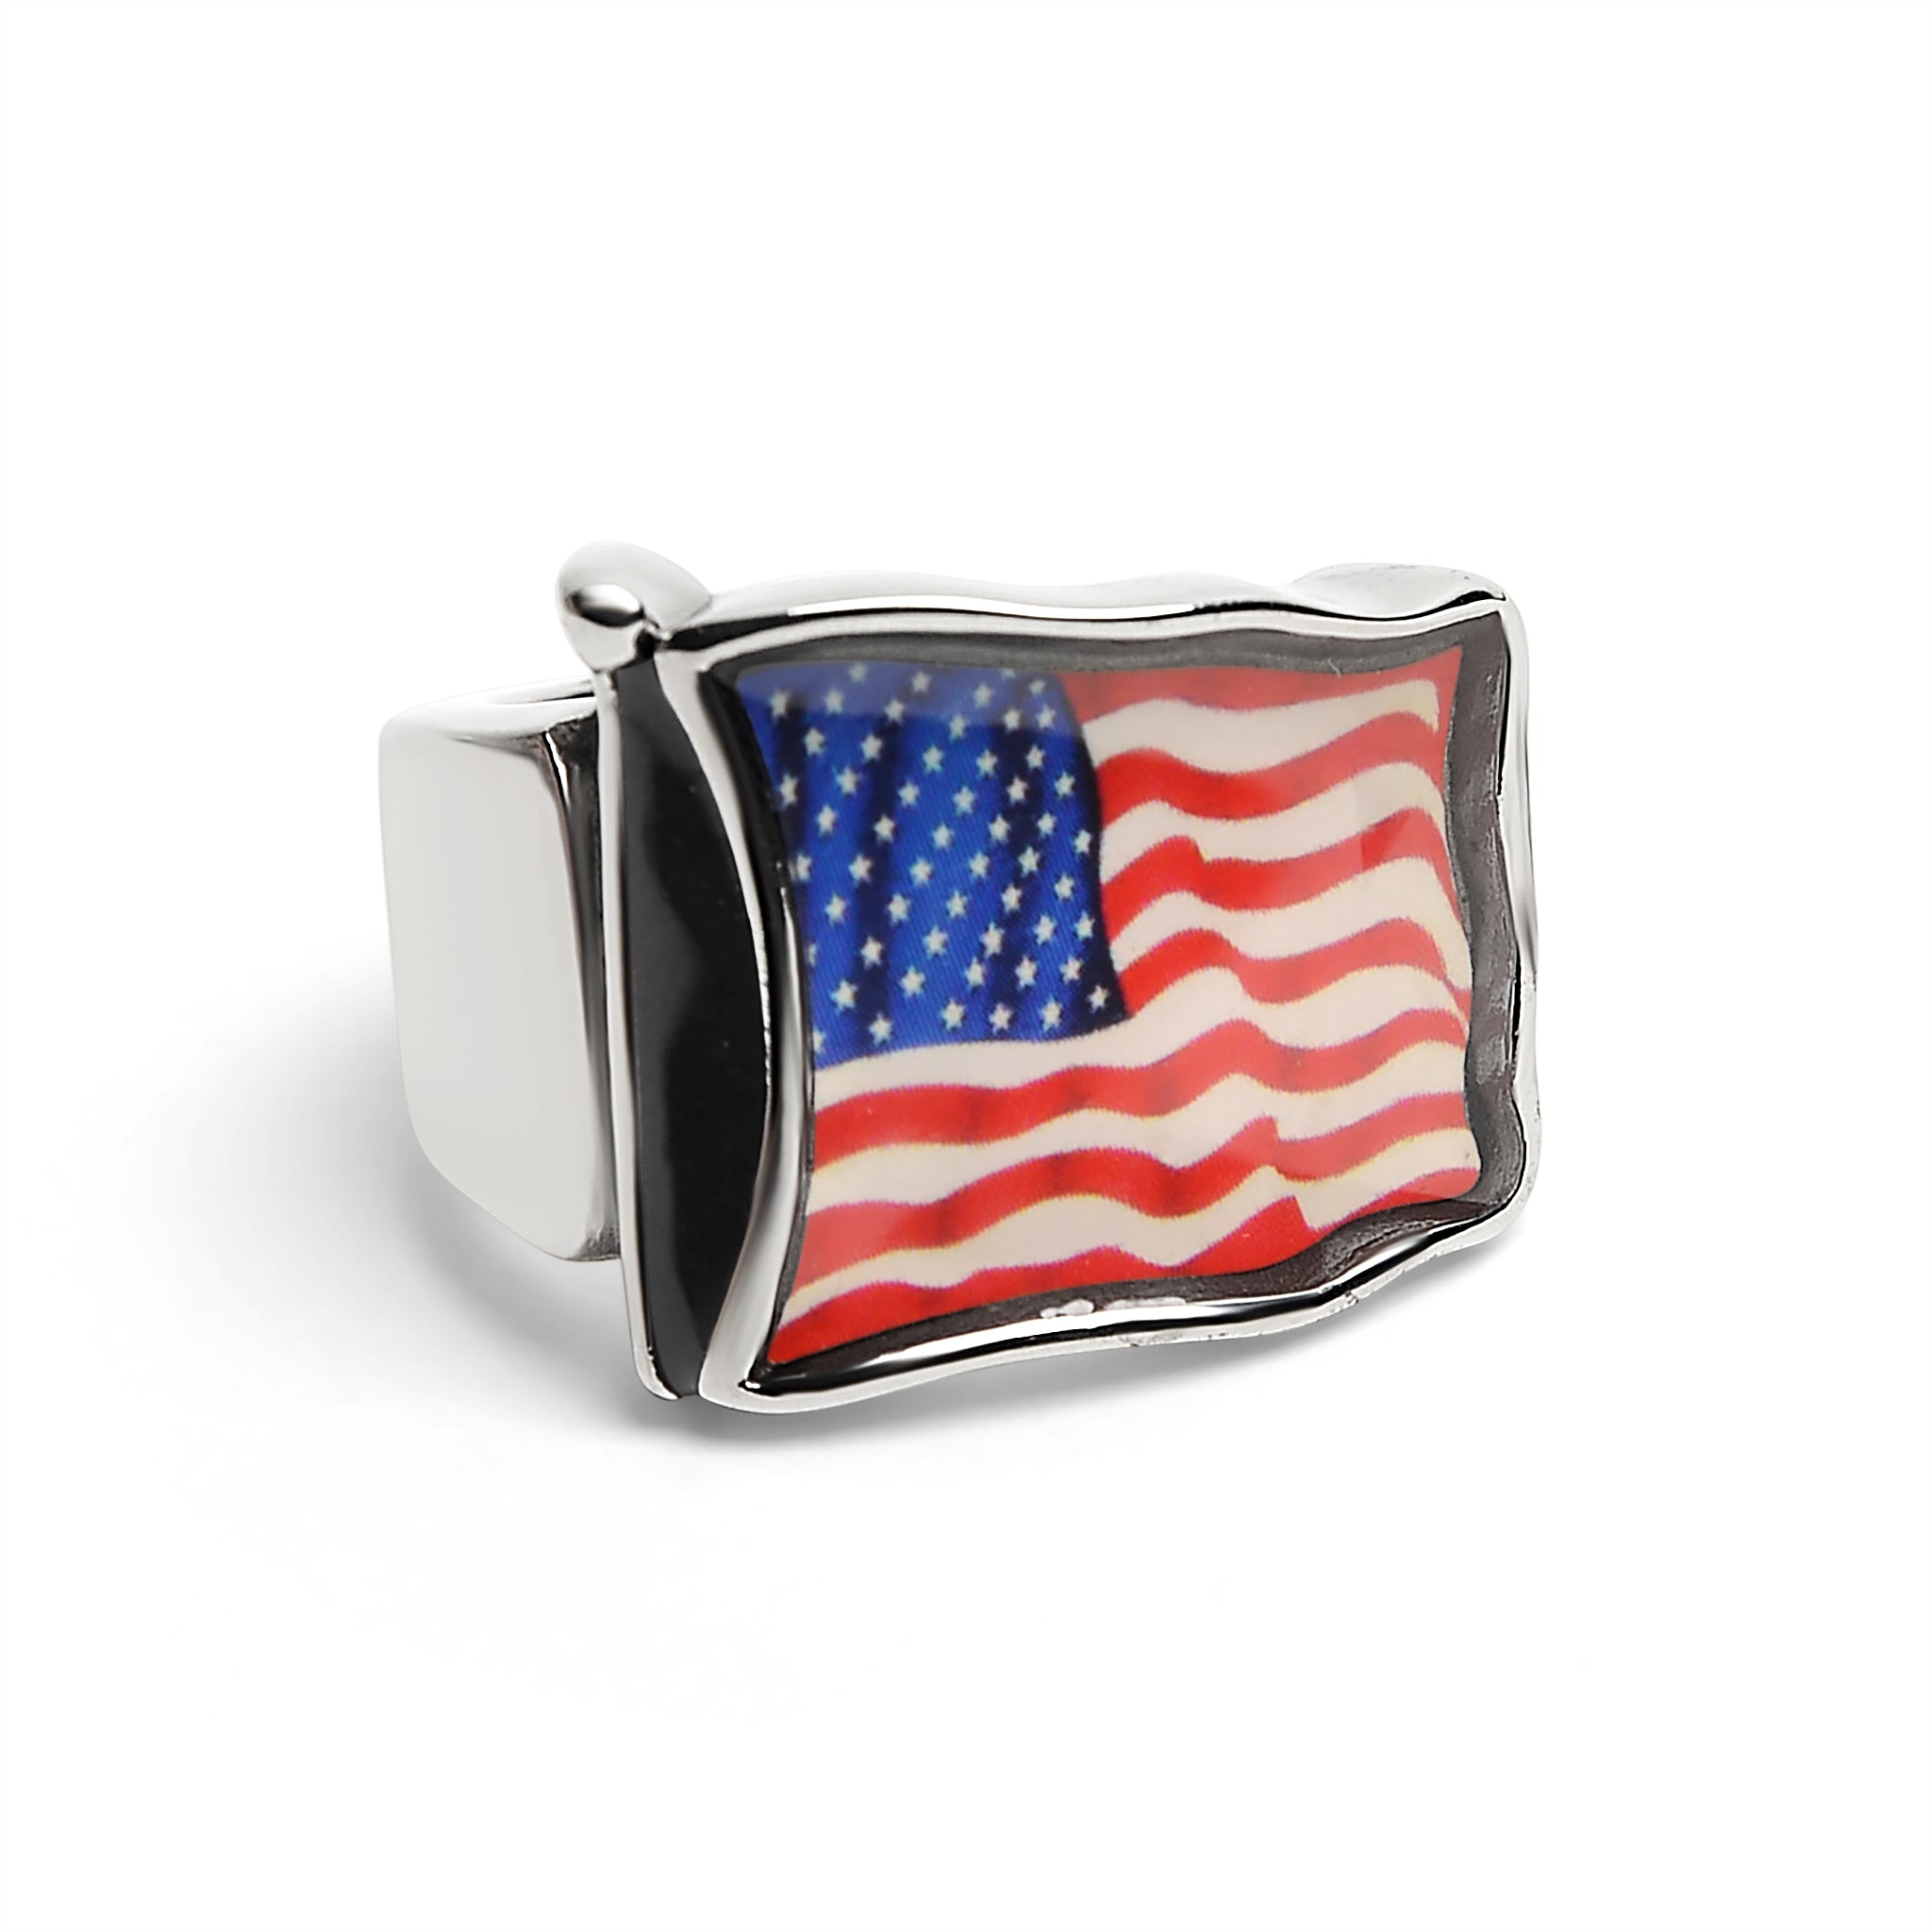 Stainless Steel USA Flag Ring / FLG0001